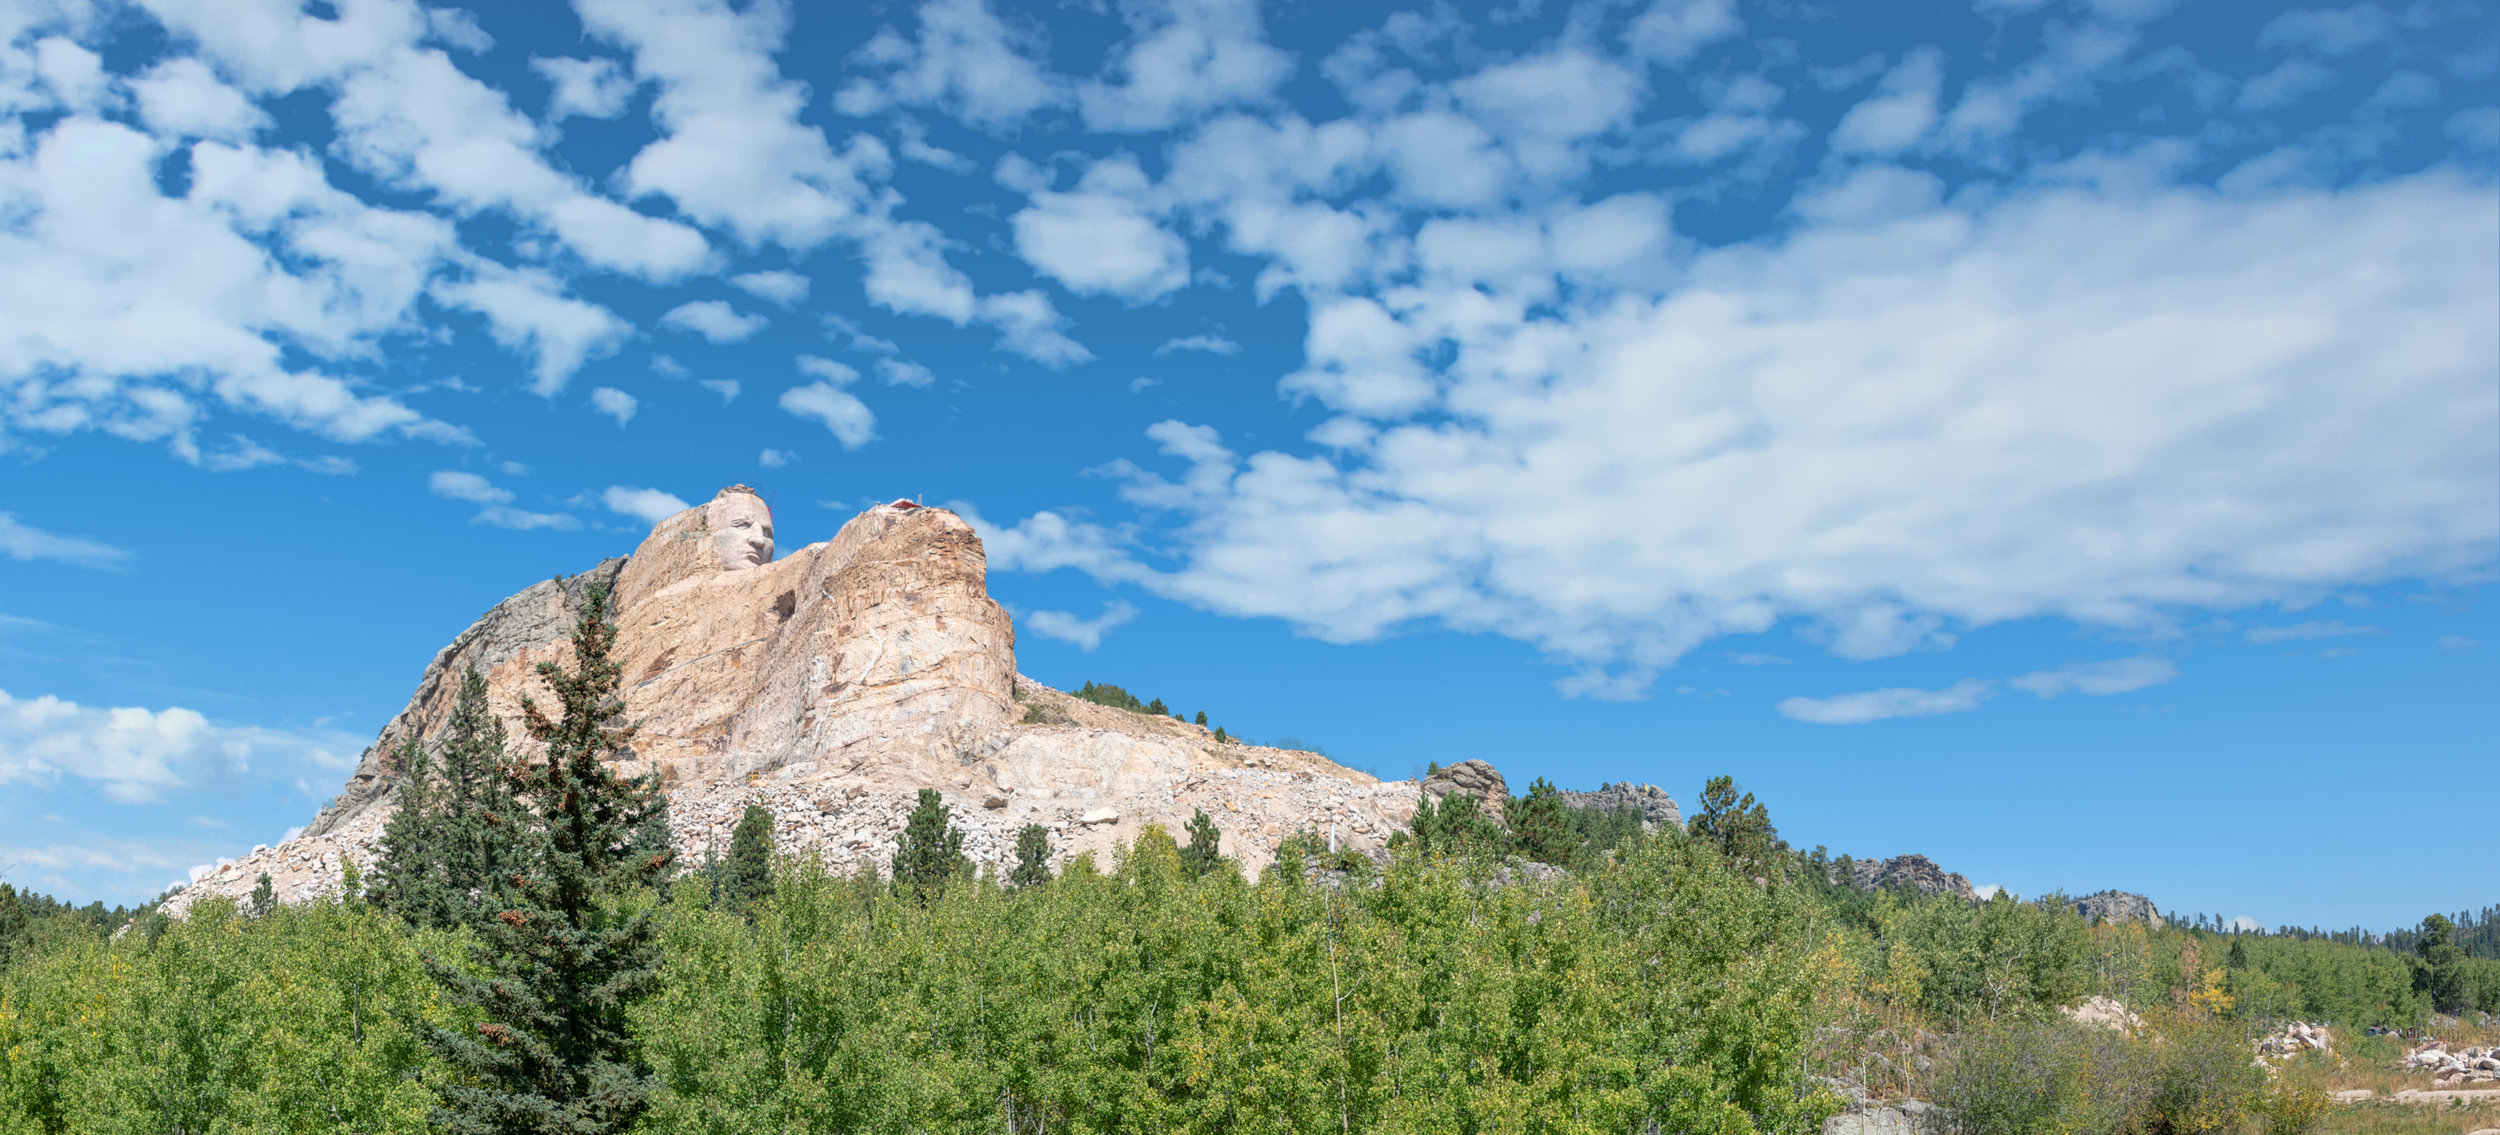 Crazy Horse Memorial Crazy Horse, South Dakota